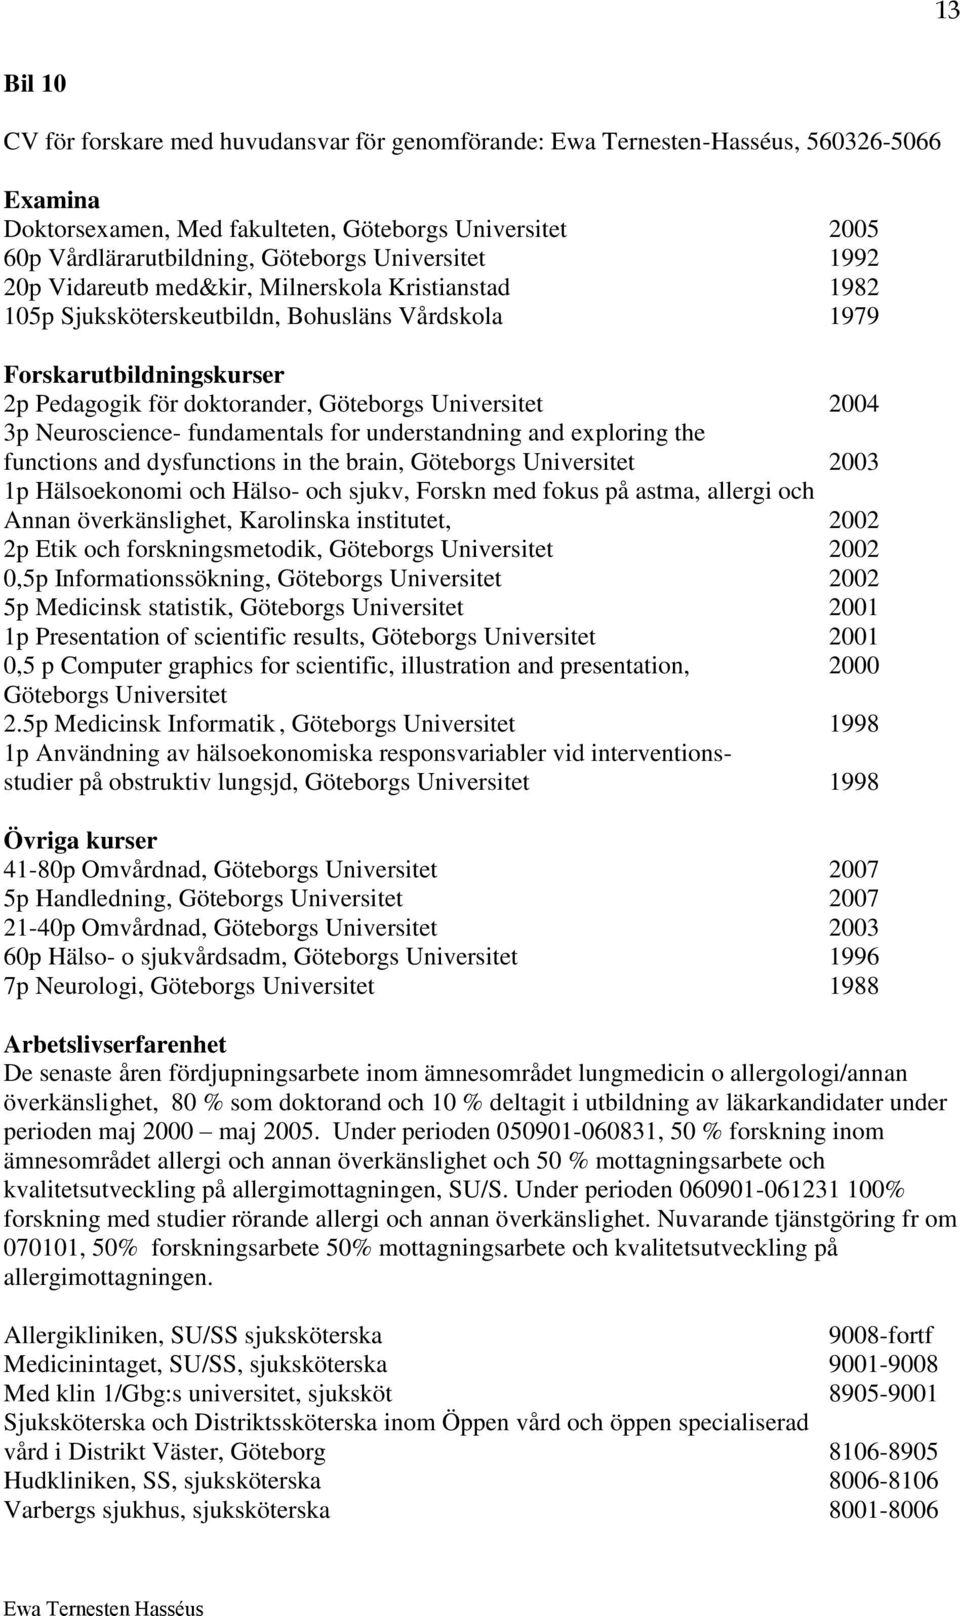 2004 3p Neuroscience- fundamentals for understandning and exploring the functions and dysfunctions in the brain, Göteborgs Universitet 2003 1p Hälsoekonomi och Hälso- och sjukv, Forskn med fokus på